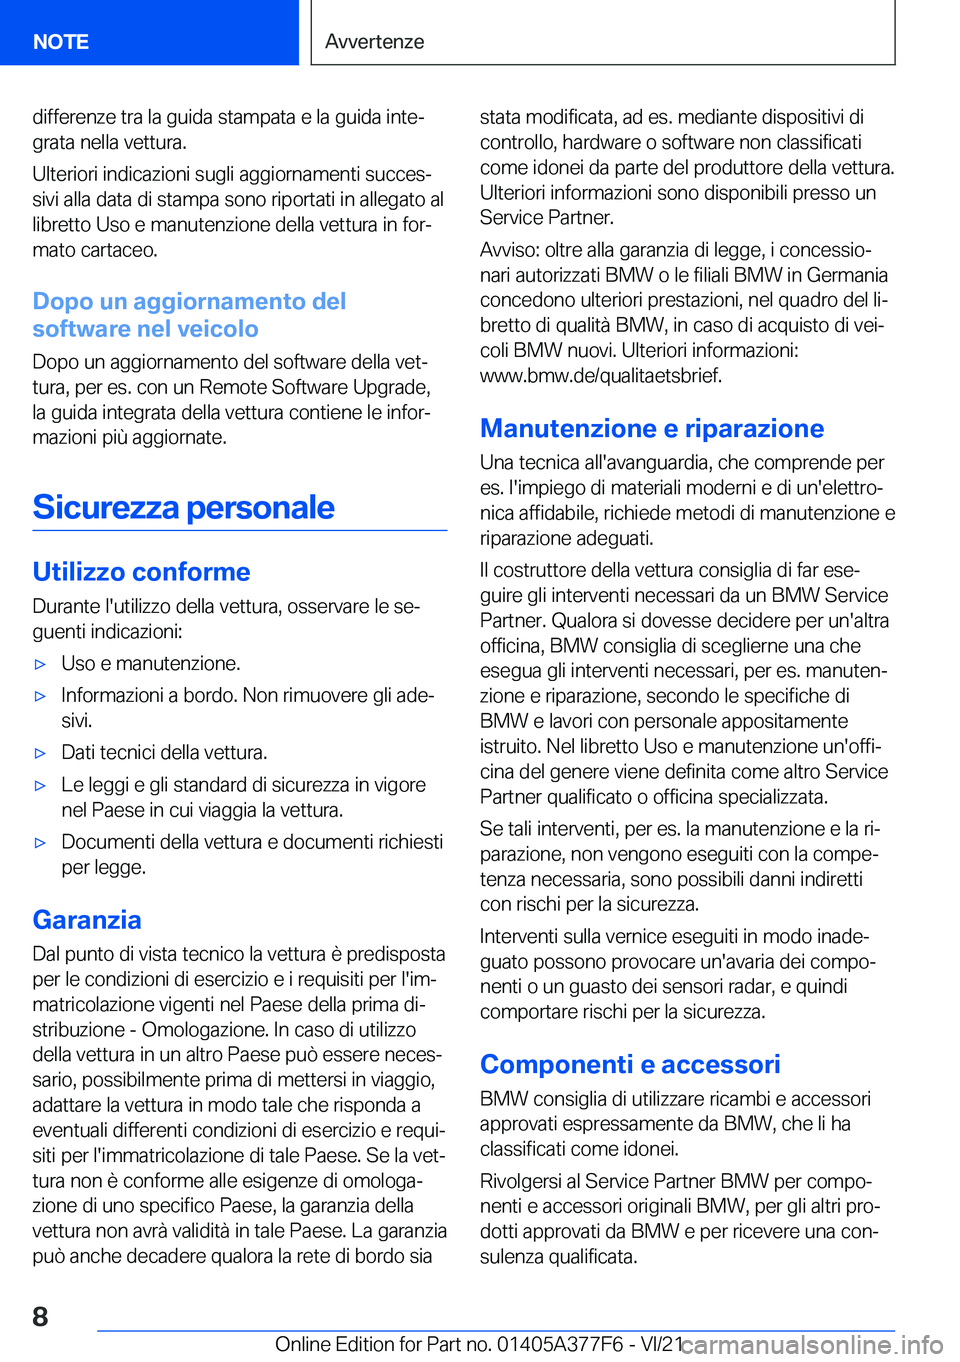 BMW X3 M 2022  Libretti Di Uso E manutenzione (in Italian) �d�i�f�f�e�r�e�n�z�e��t�r�a��l�a��g�u�i�d�a��s�t�a�m�p�a�t�a��e��l�a��g�u�i�d�a��i�n�t�eª�g�r�a�t�a��n�e�l�l�a��v�e�t�t�u�r�a�.
�U�l�t�e�r�i�o�r�i��i�n�d�i�c�a�z�i�o�n�i��s�u�g�l�i��a�g